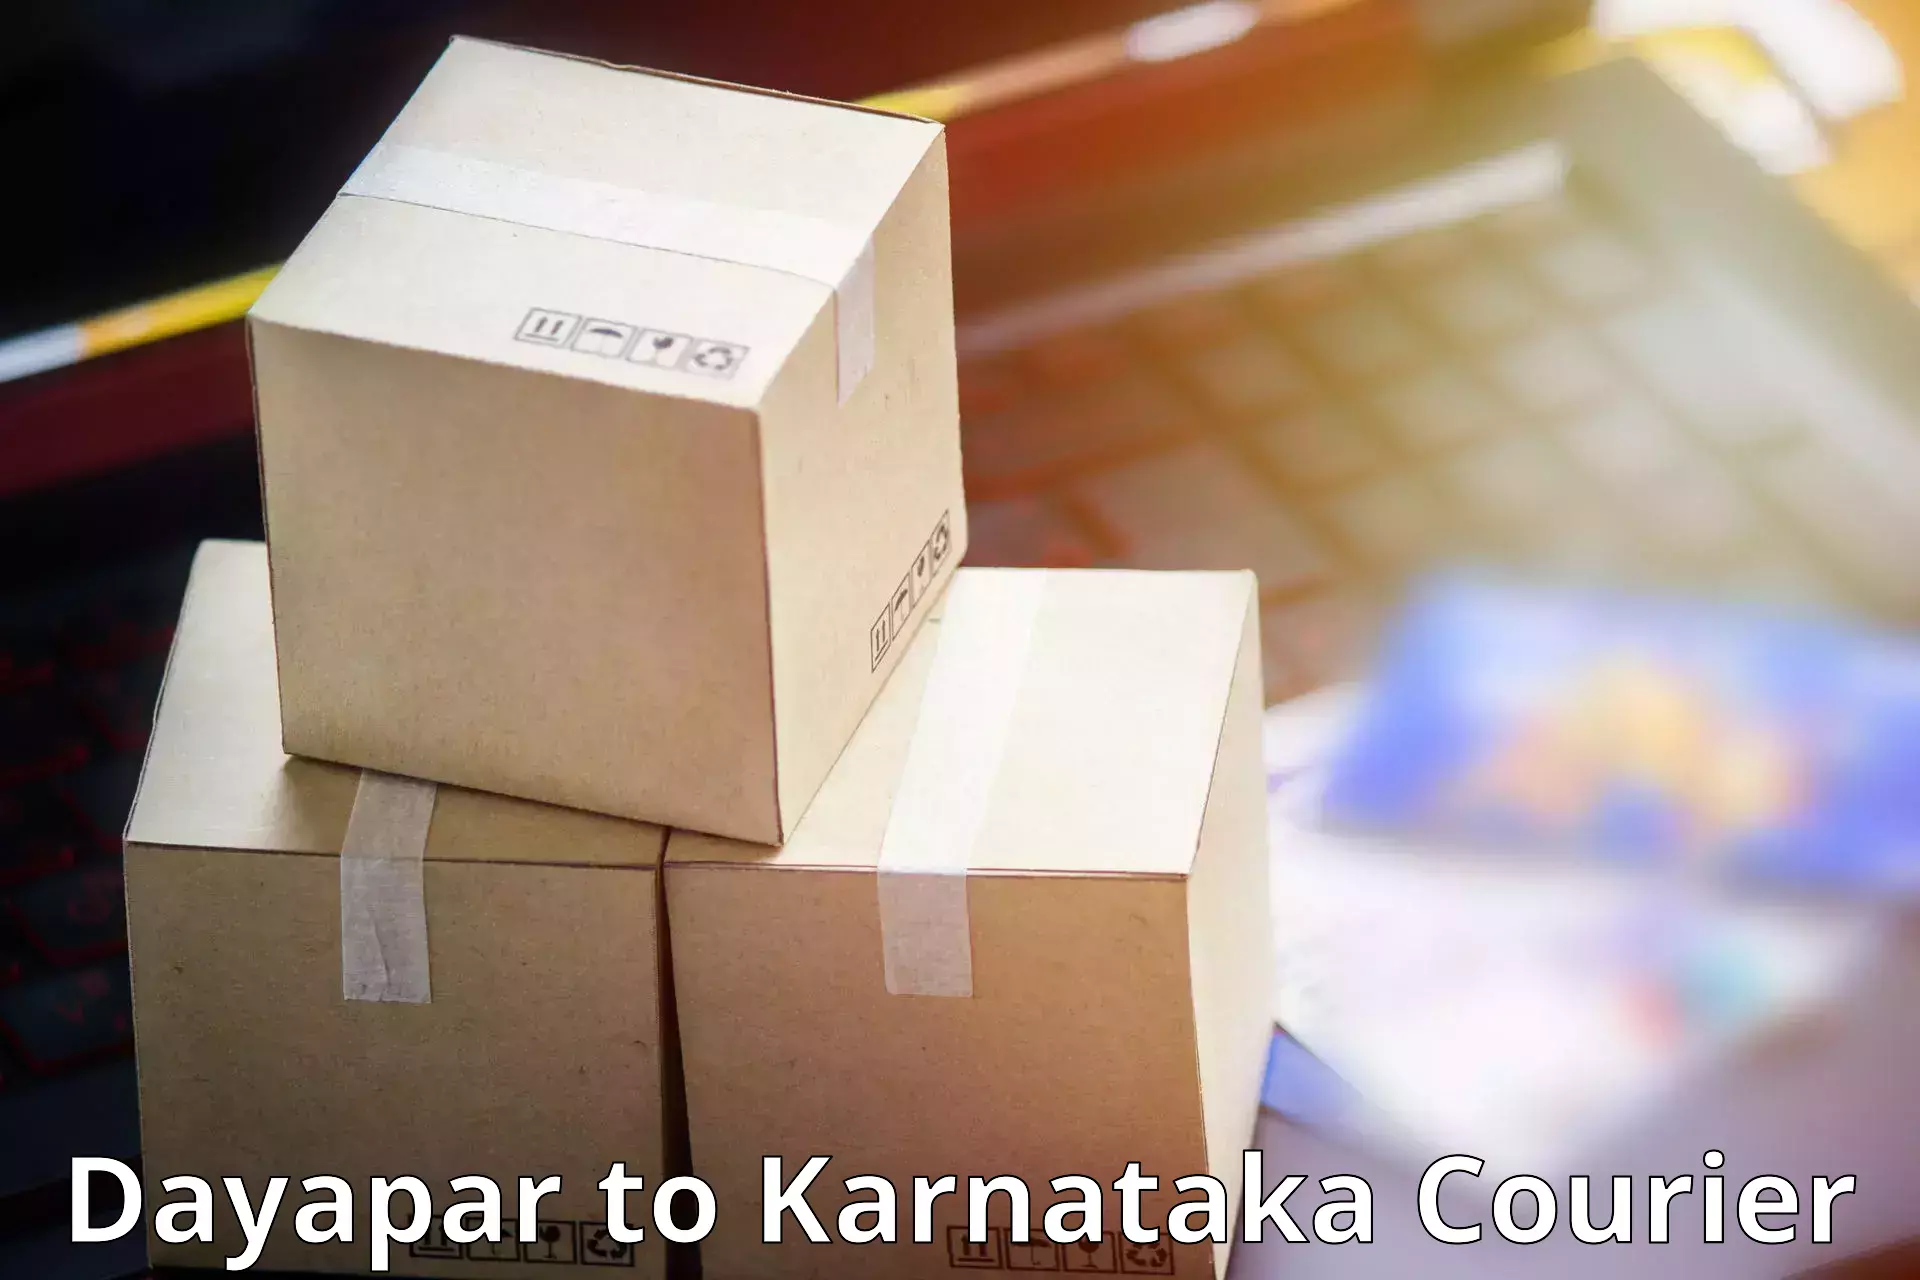 Professional courier services Dayapar to Tirumakudalu Narasipura